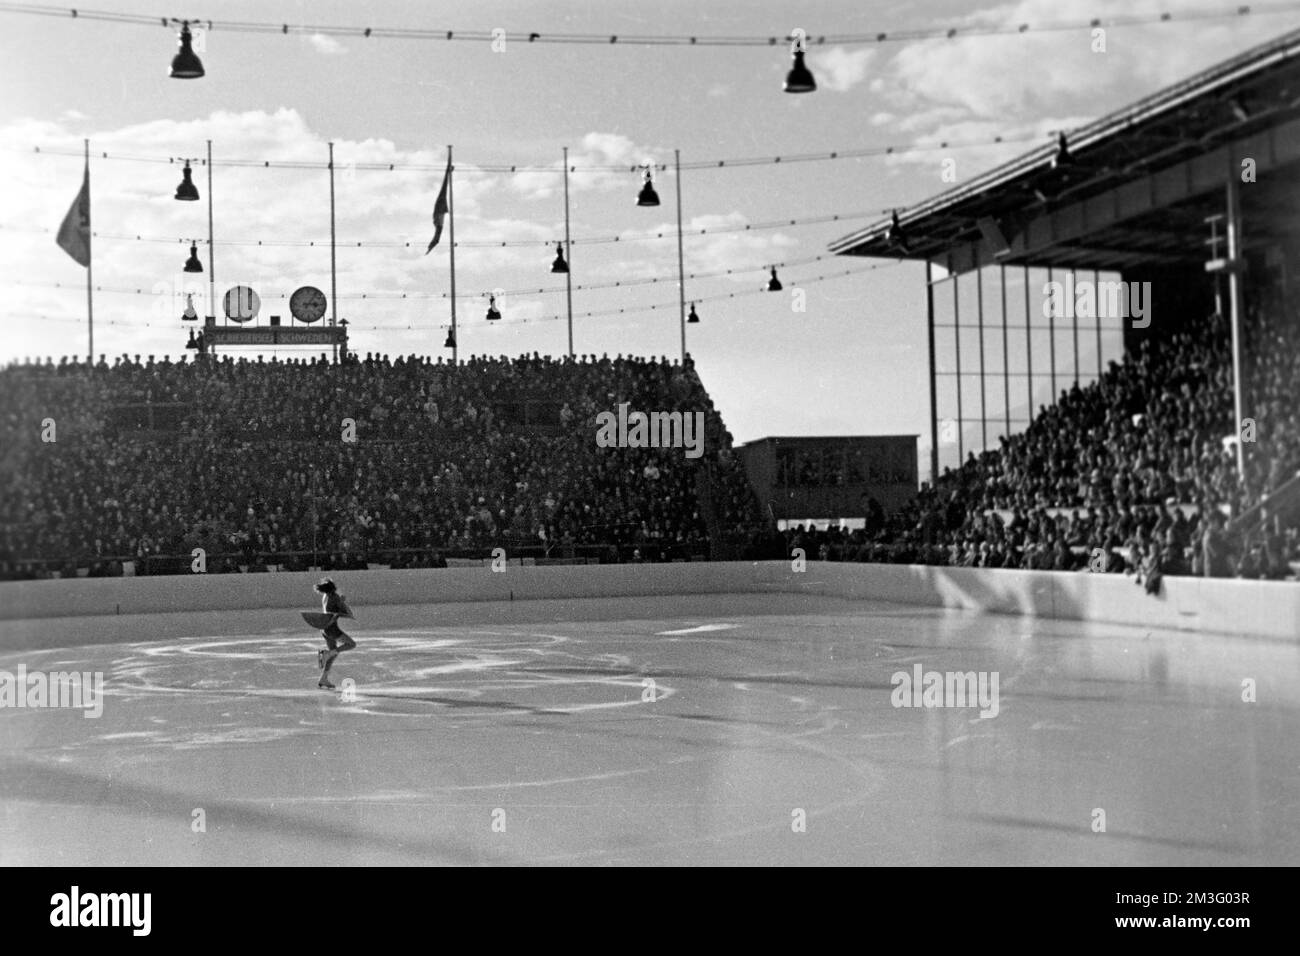 Dameneiskunstlauf bei den Olympischen Winterspielen in Garmisch-Partenkirchen, 1936. Women's figure skating at the Winter Olympics in Garmisch-Partenkirchen, 1936. Stock Photo